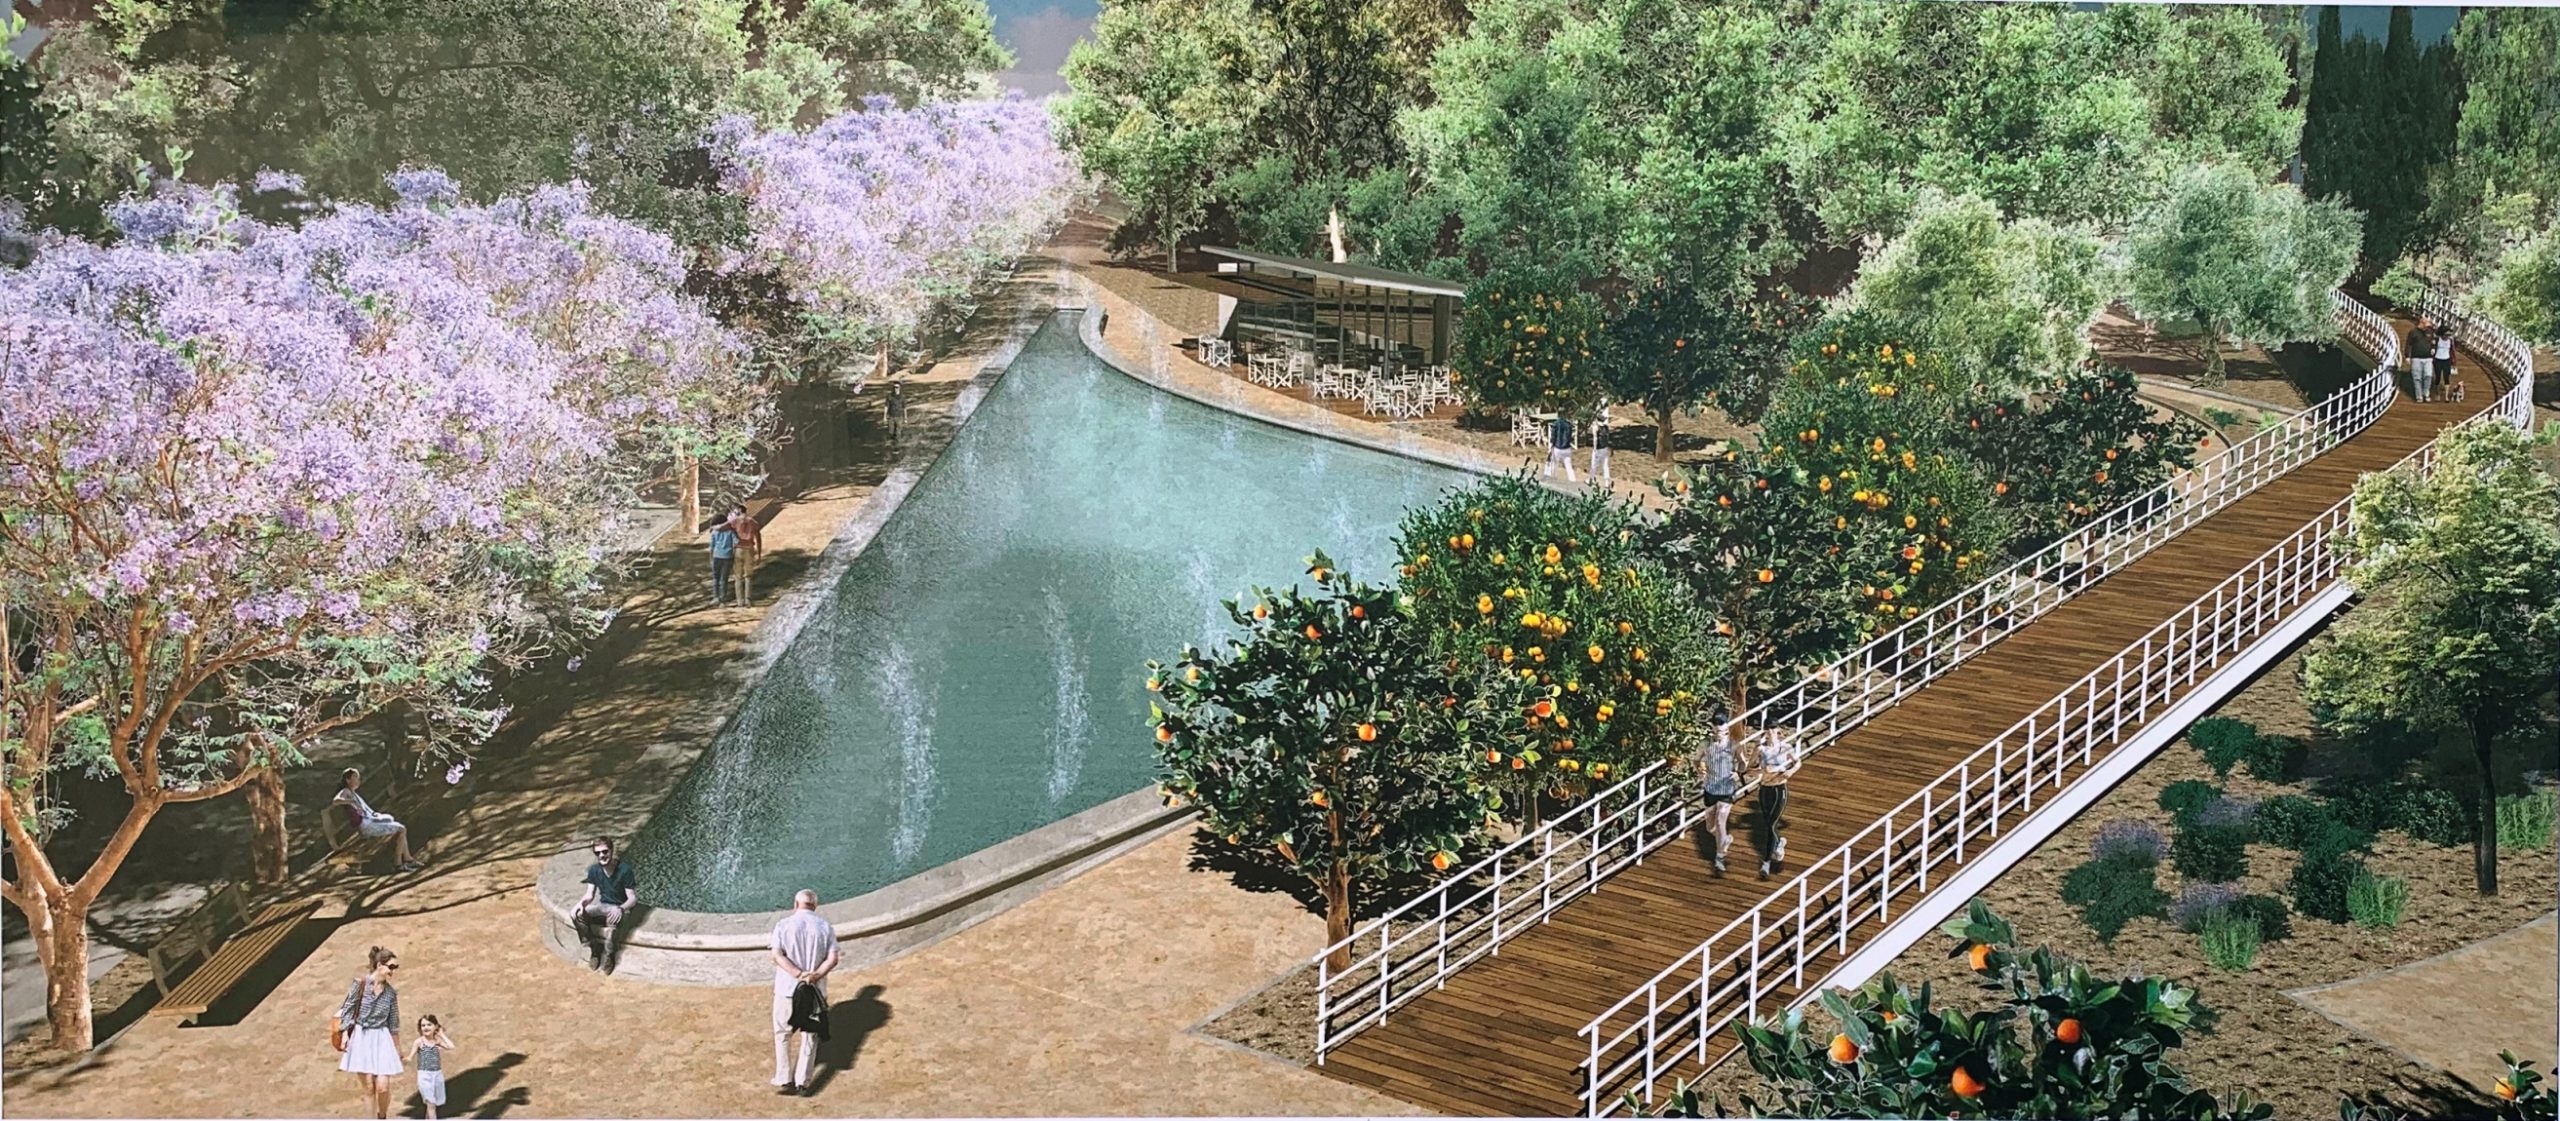 Με το Πάρκο Σαλίνα ο Δήμος Λάρνακας προωθεί νέους χώρους πρασίνου στην πόλη